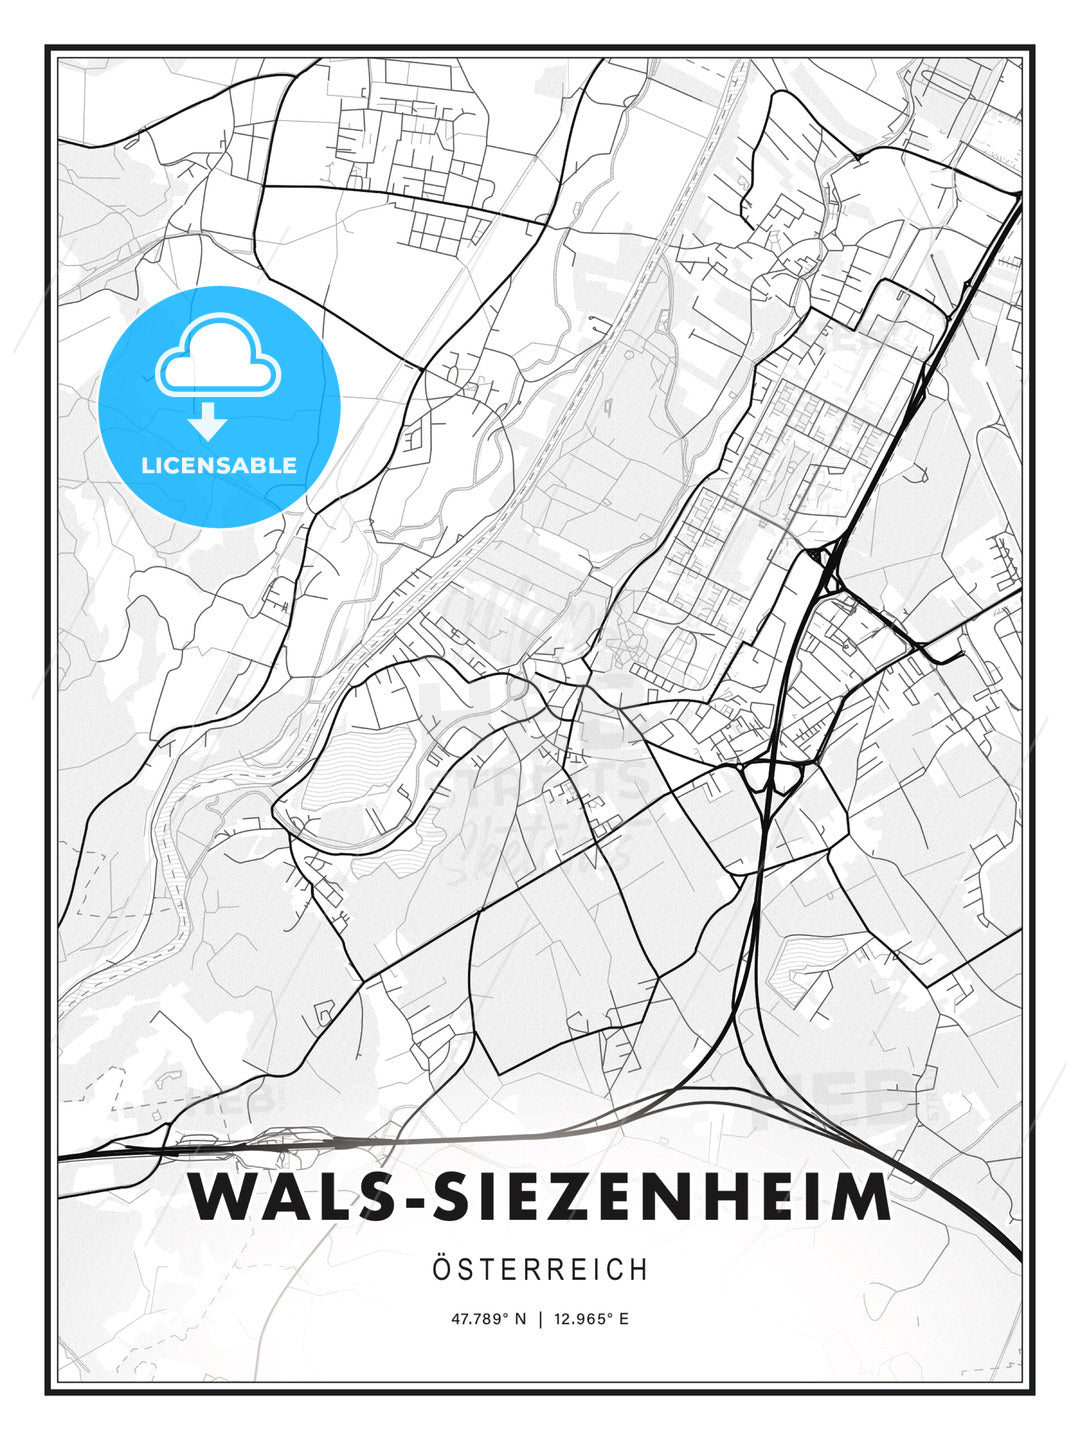 Wals-Siezenheim, Austria, Modern Print Template in Various Formats - HEBSTREITS Sketches